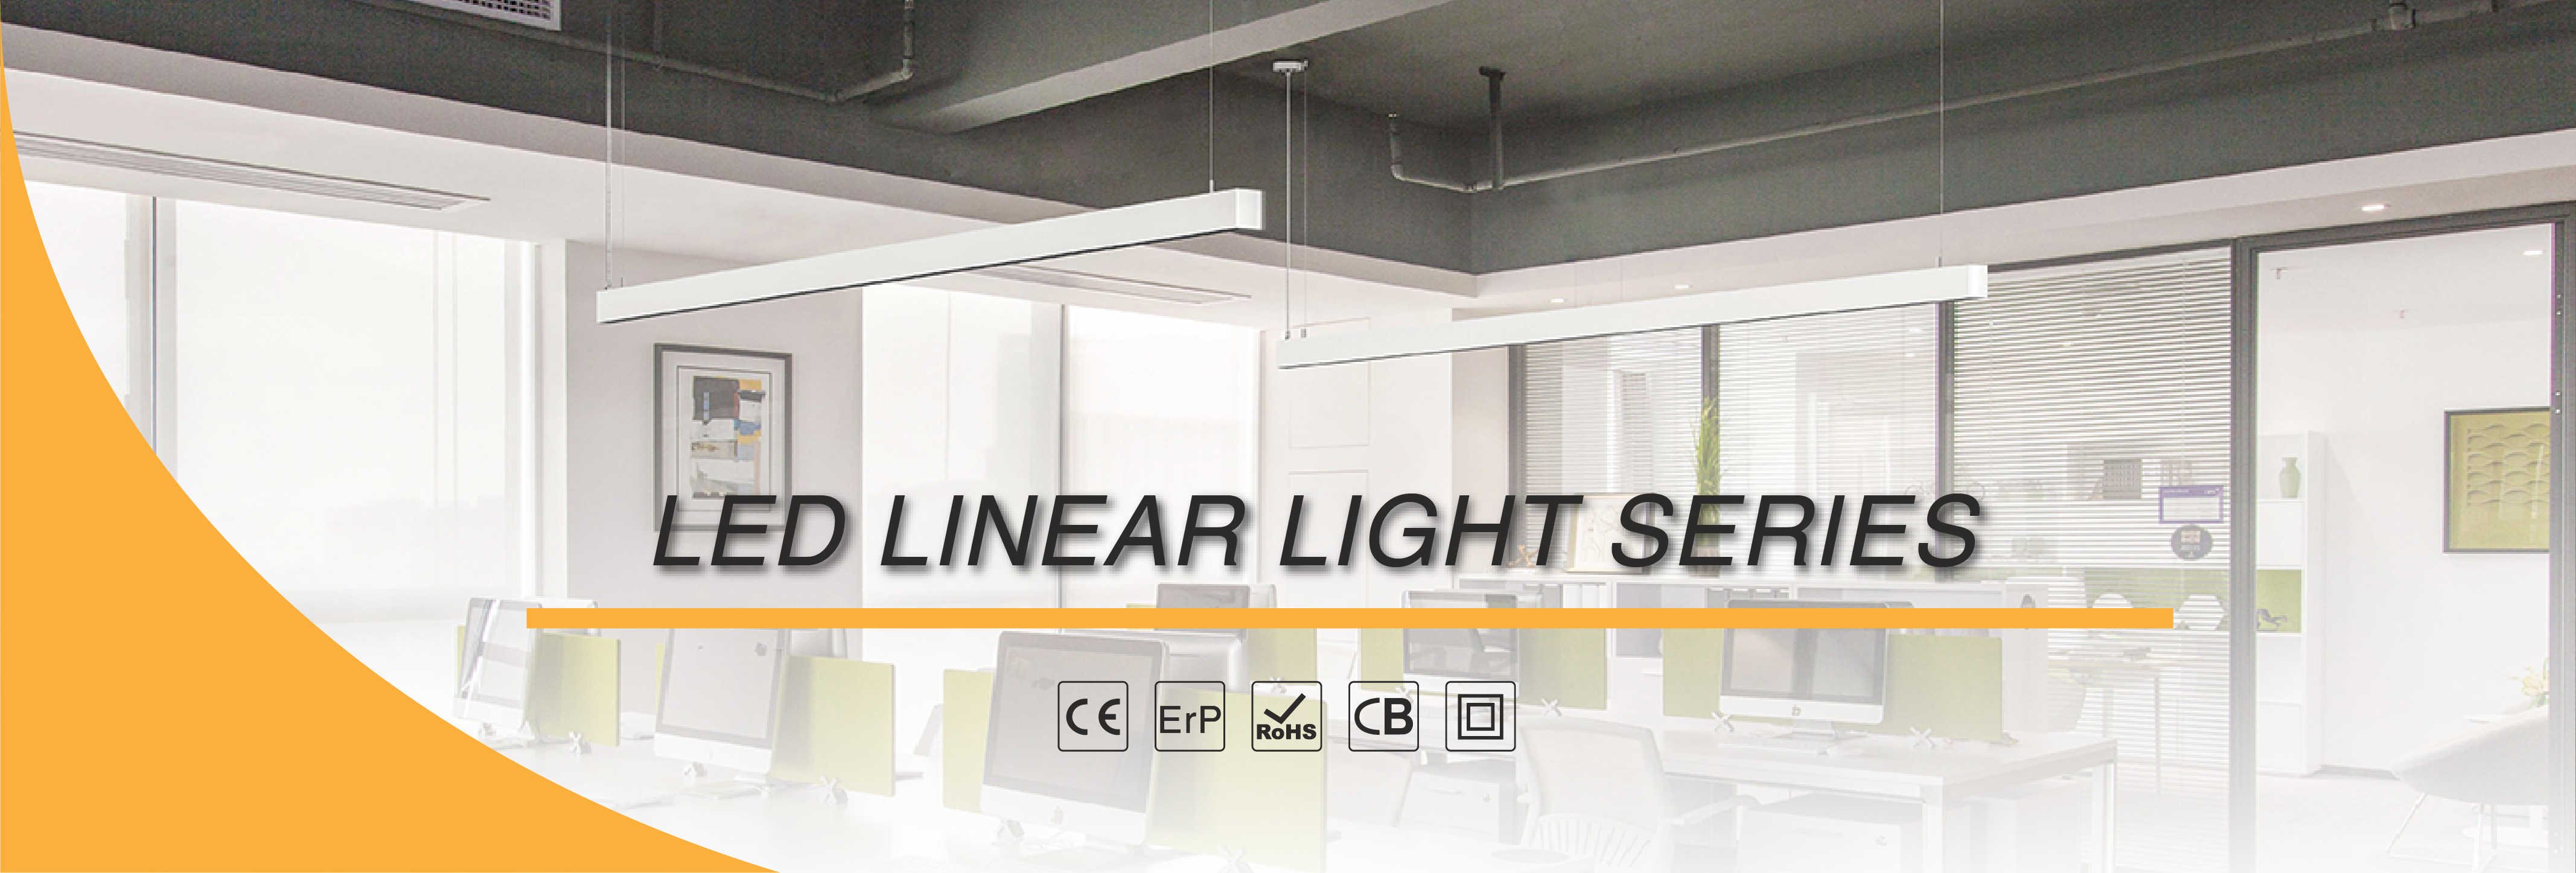 Led Linear Light